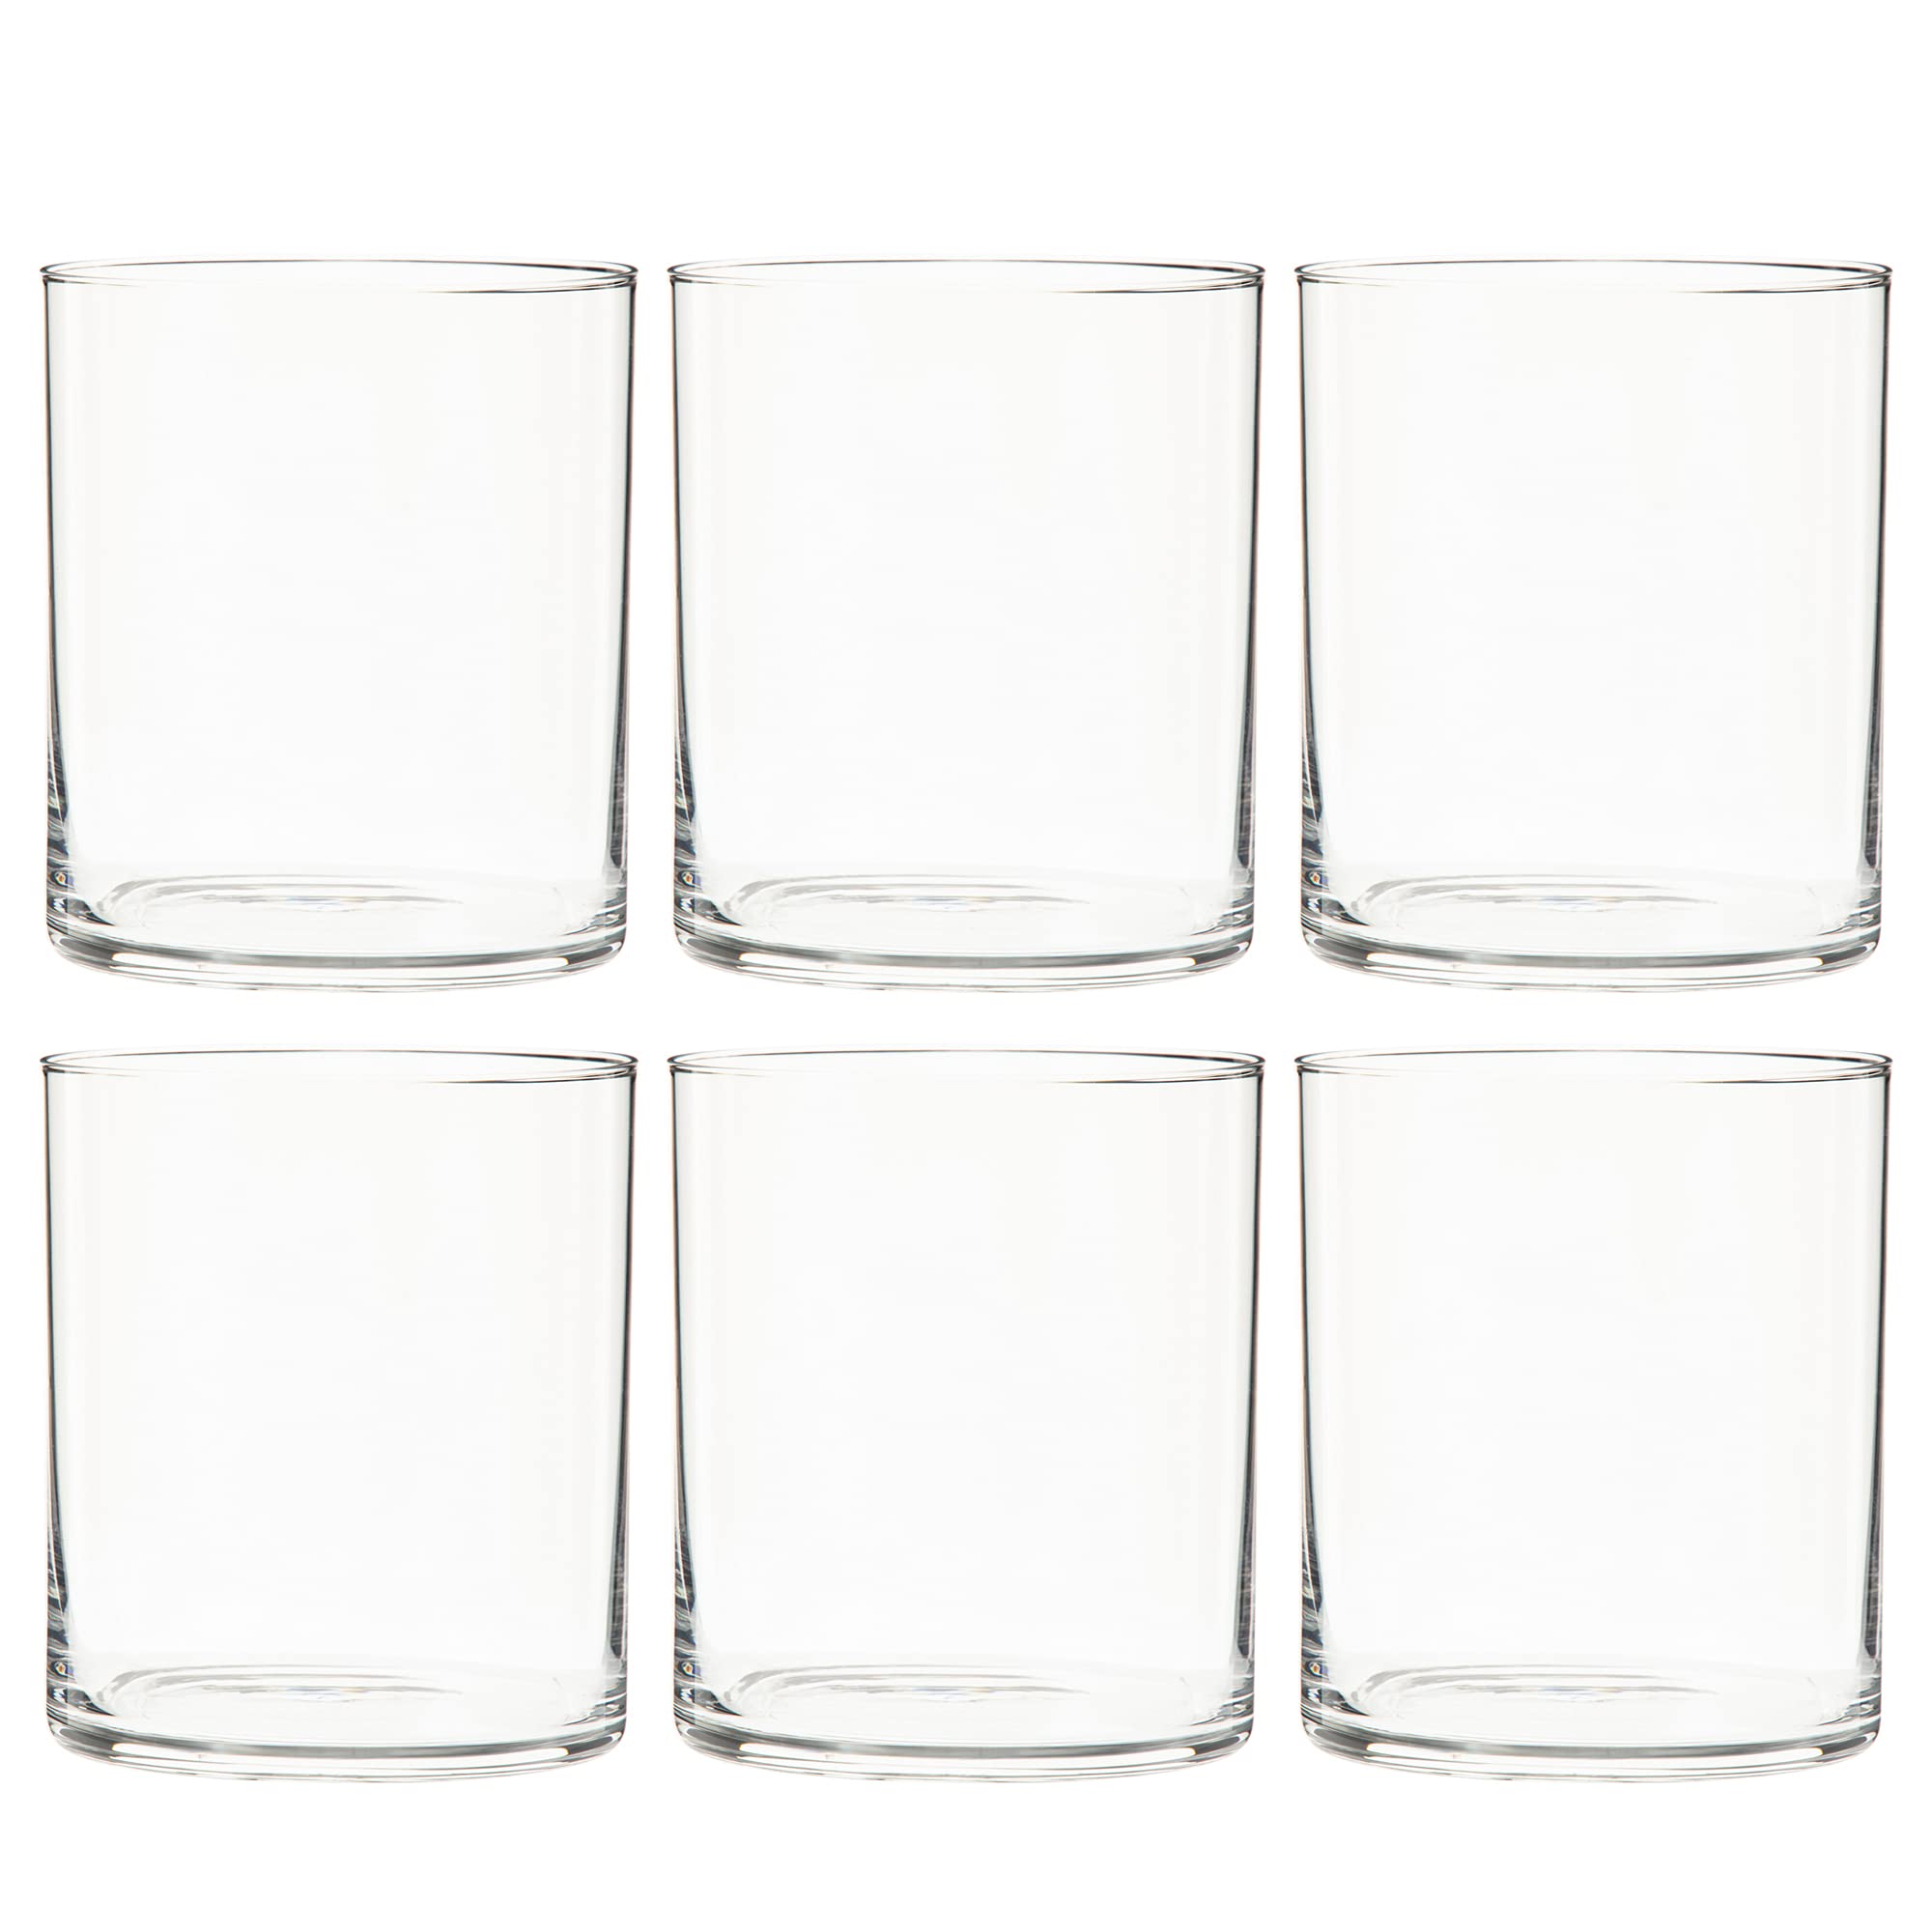 東洋佐々木ガラス Toyo Sasaki Glass P-33103HS-JAN Whiskey Glass, Rock Glass, Silk Line, 10.1 fl oz (310 ml), Set of 6, On the Rock, Shatter-Resistant, Cup, Made in Japan, Dishwasher Safe